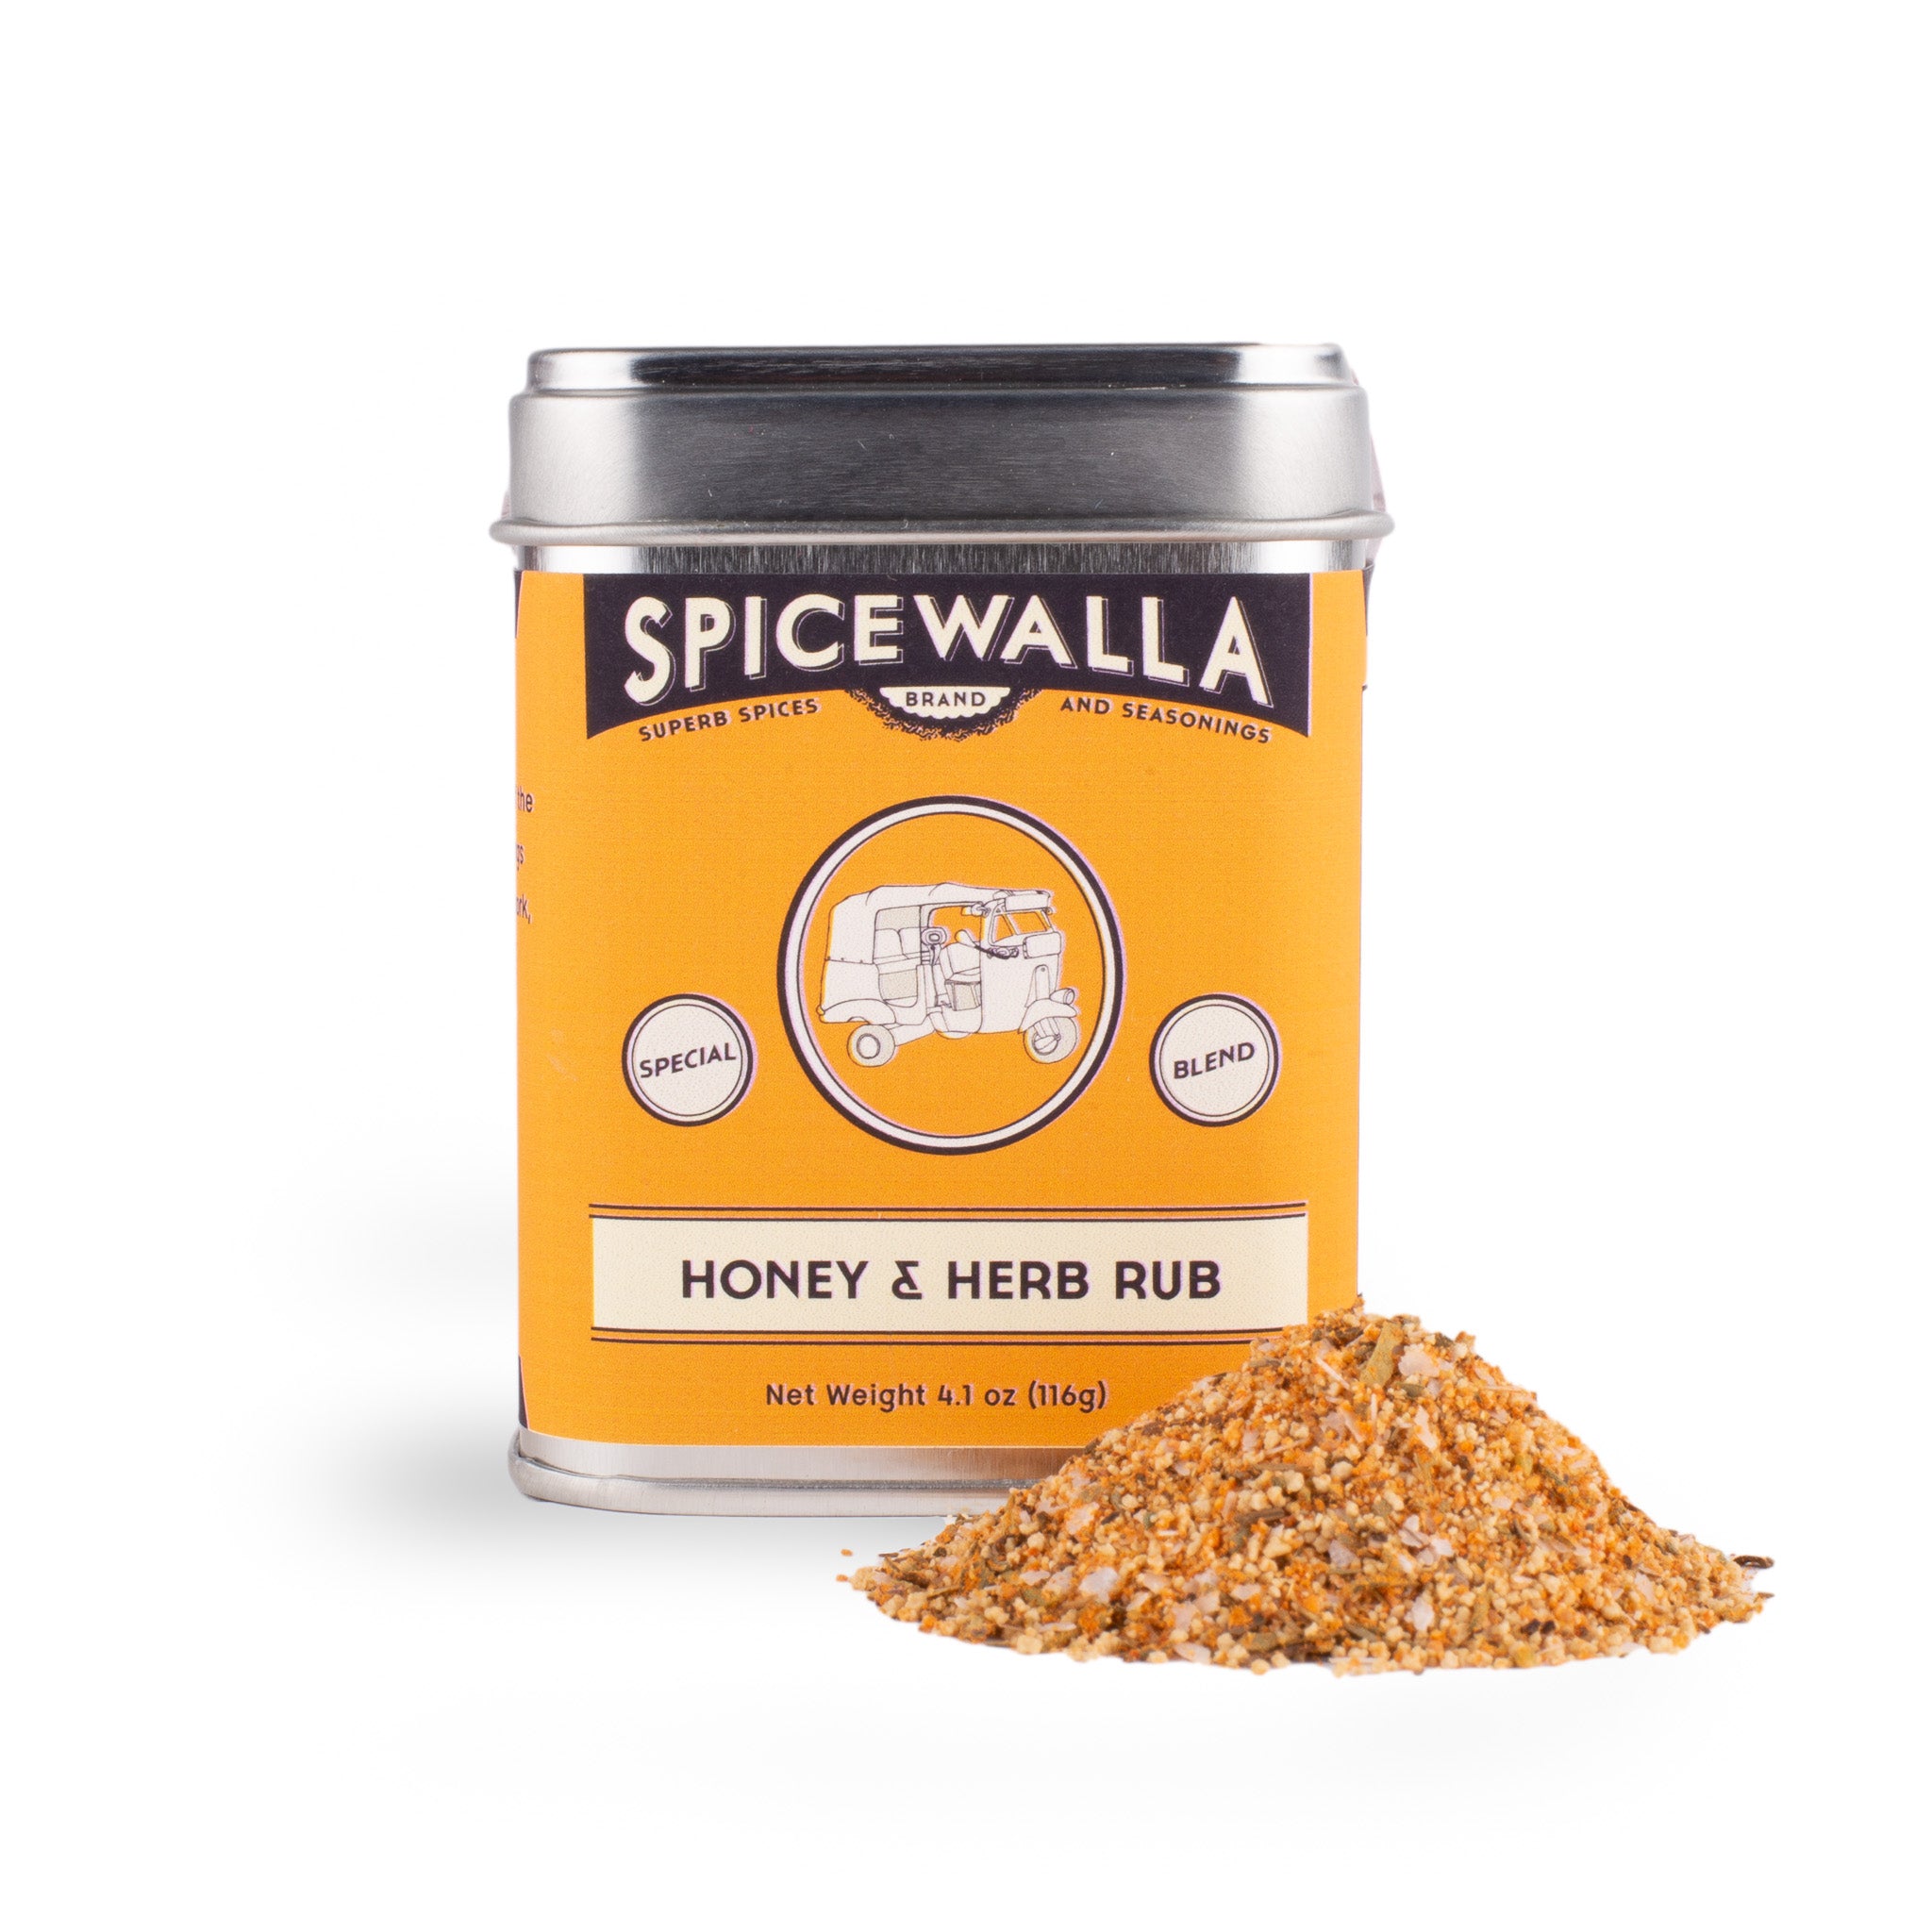 Spicewalla Honey & Herb Rub, 4.1 oz